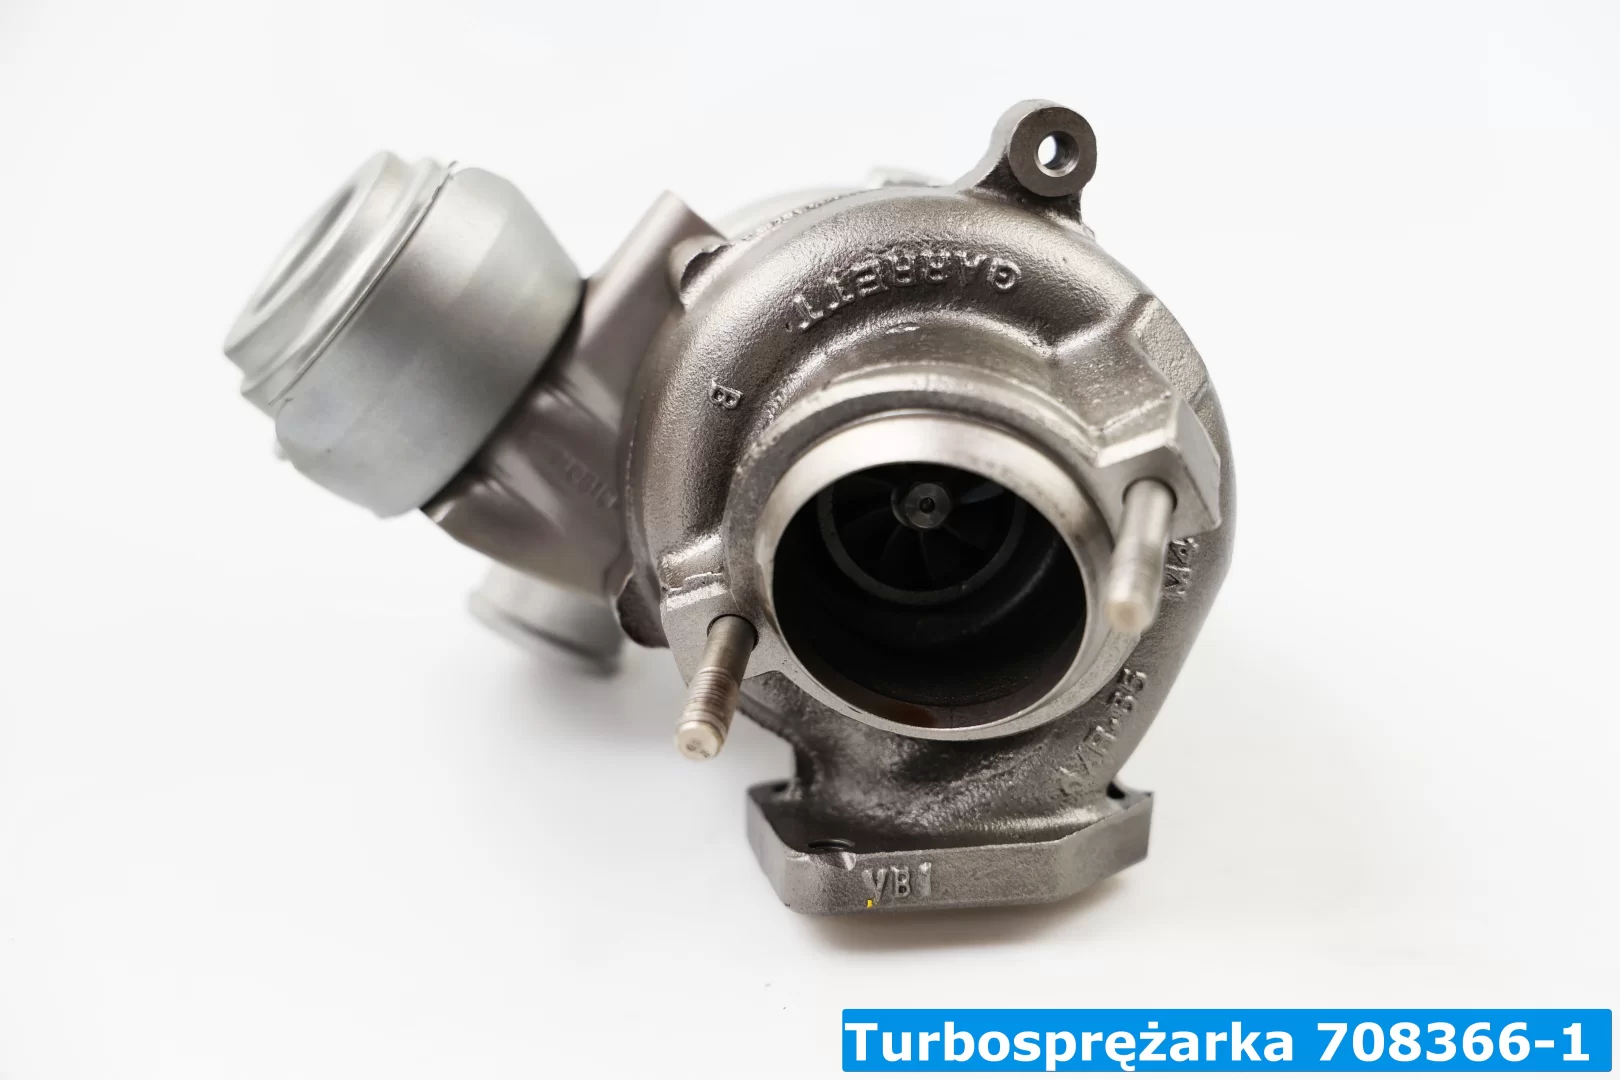 Turbo 70836611